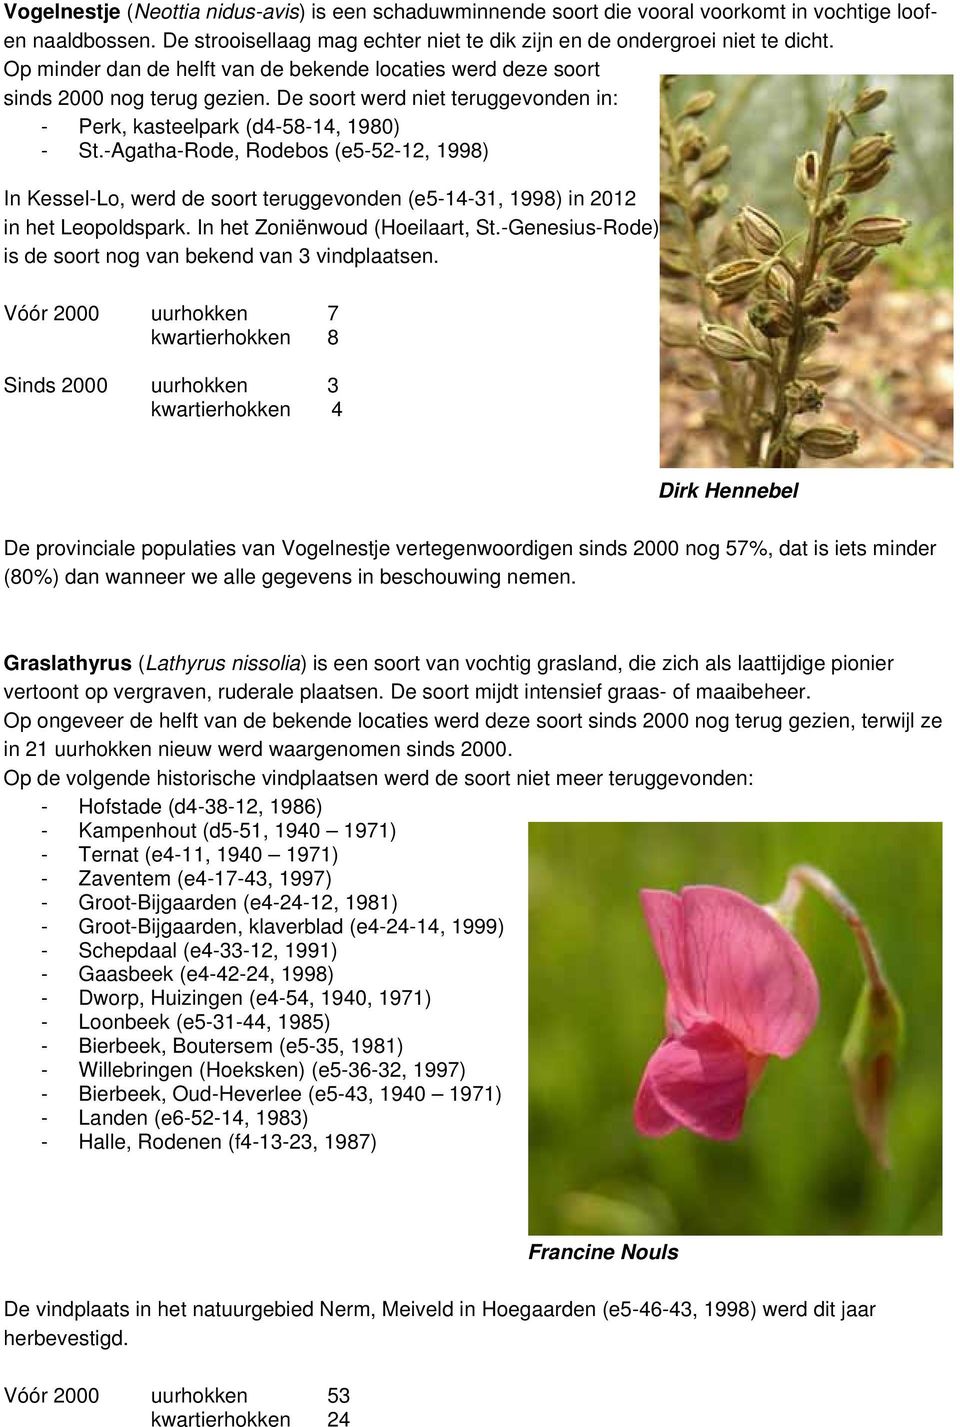 -Agatha-Rode, Rodebos (e5-52-12, 1998) In Kessel-Lo, werd de soort teruggevonden (e5-14-31, 1998) in 2012 in het Leopoldspark. In het Zoniënwoud (Hoeilaart, St.